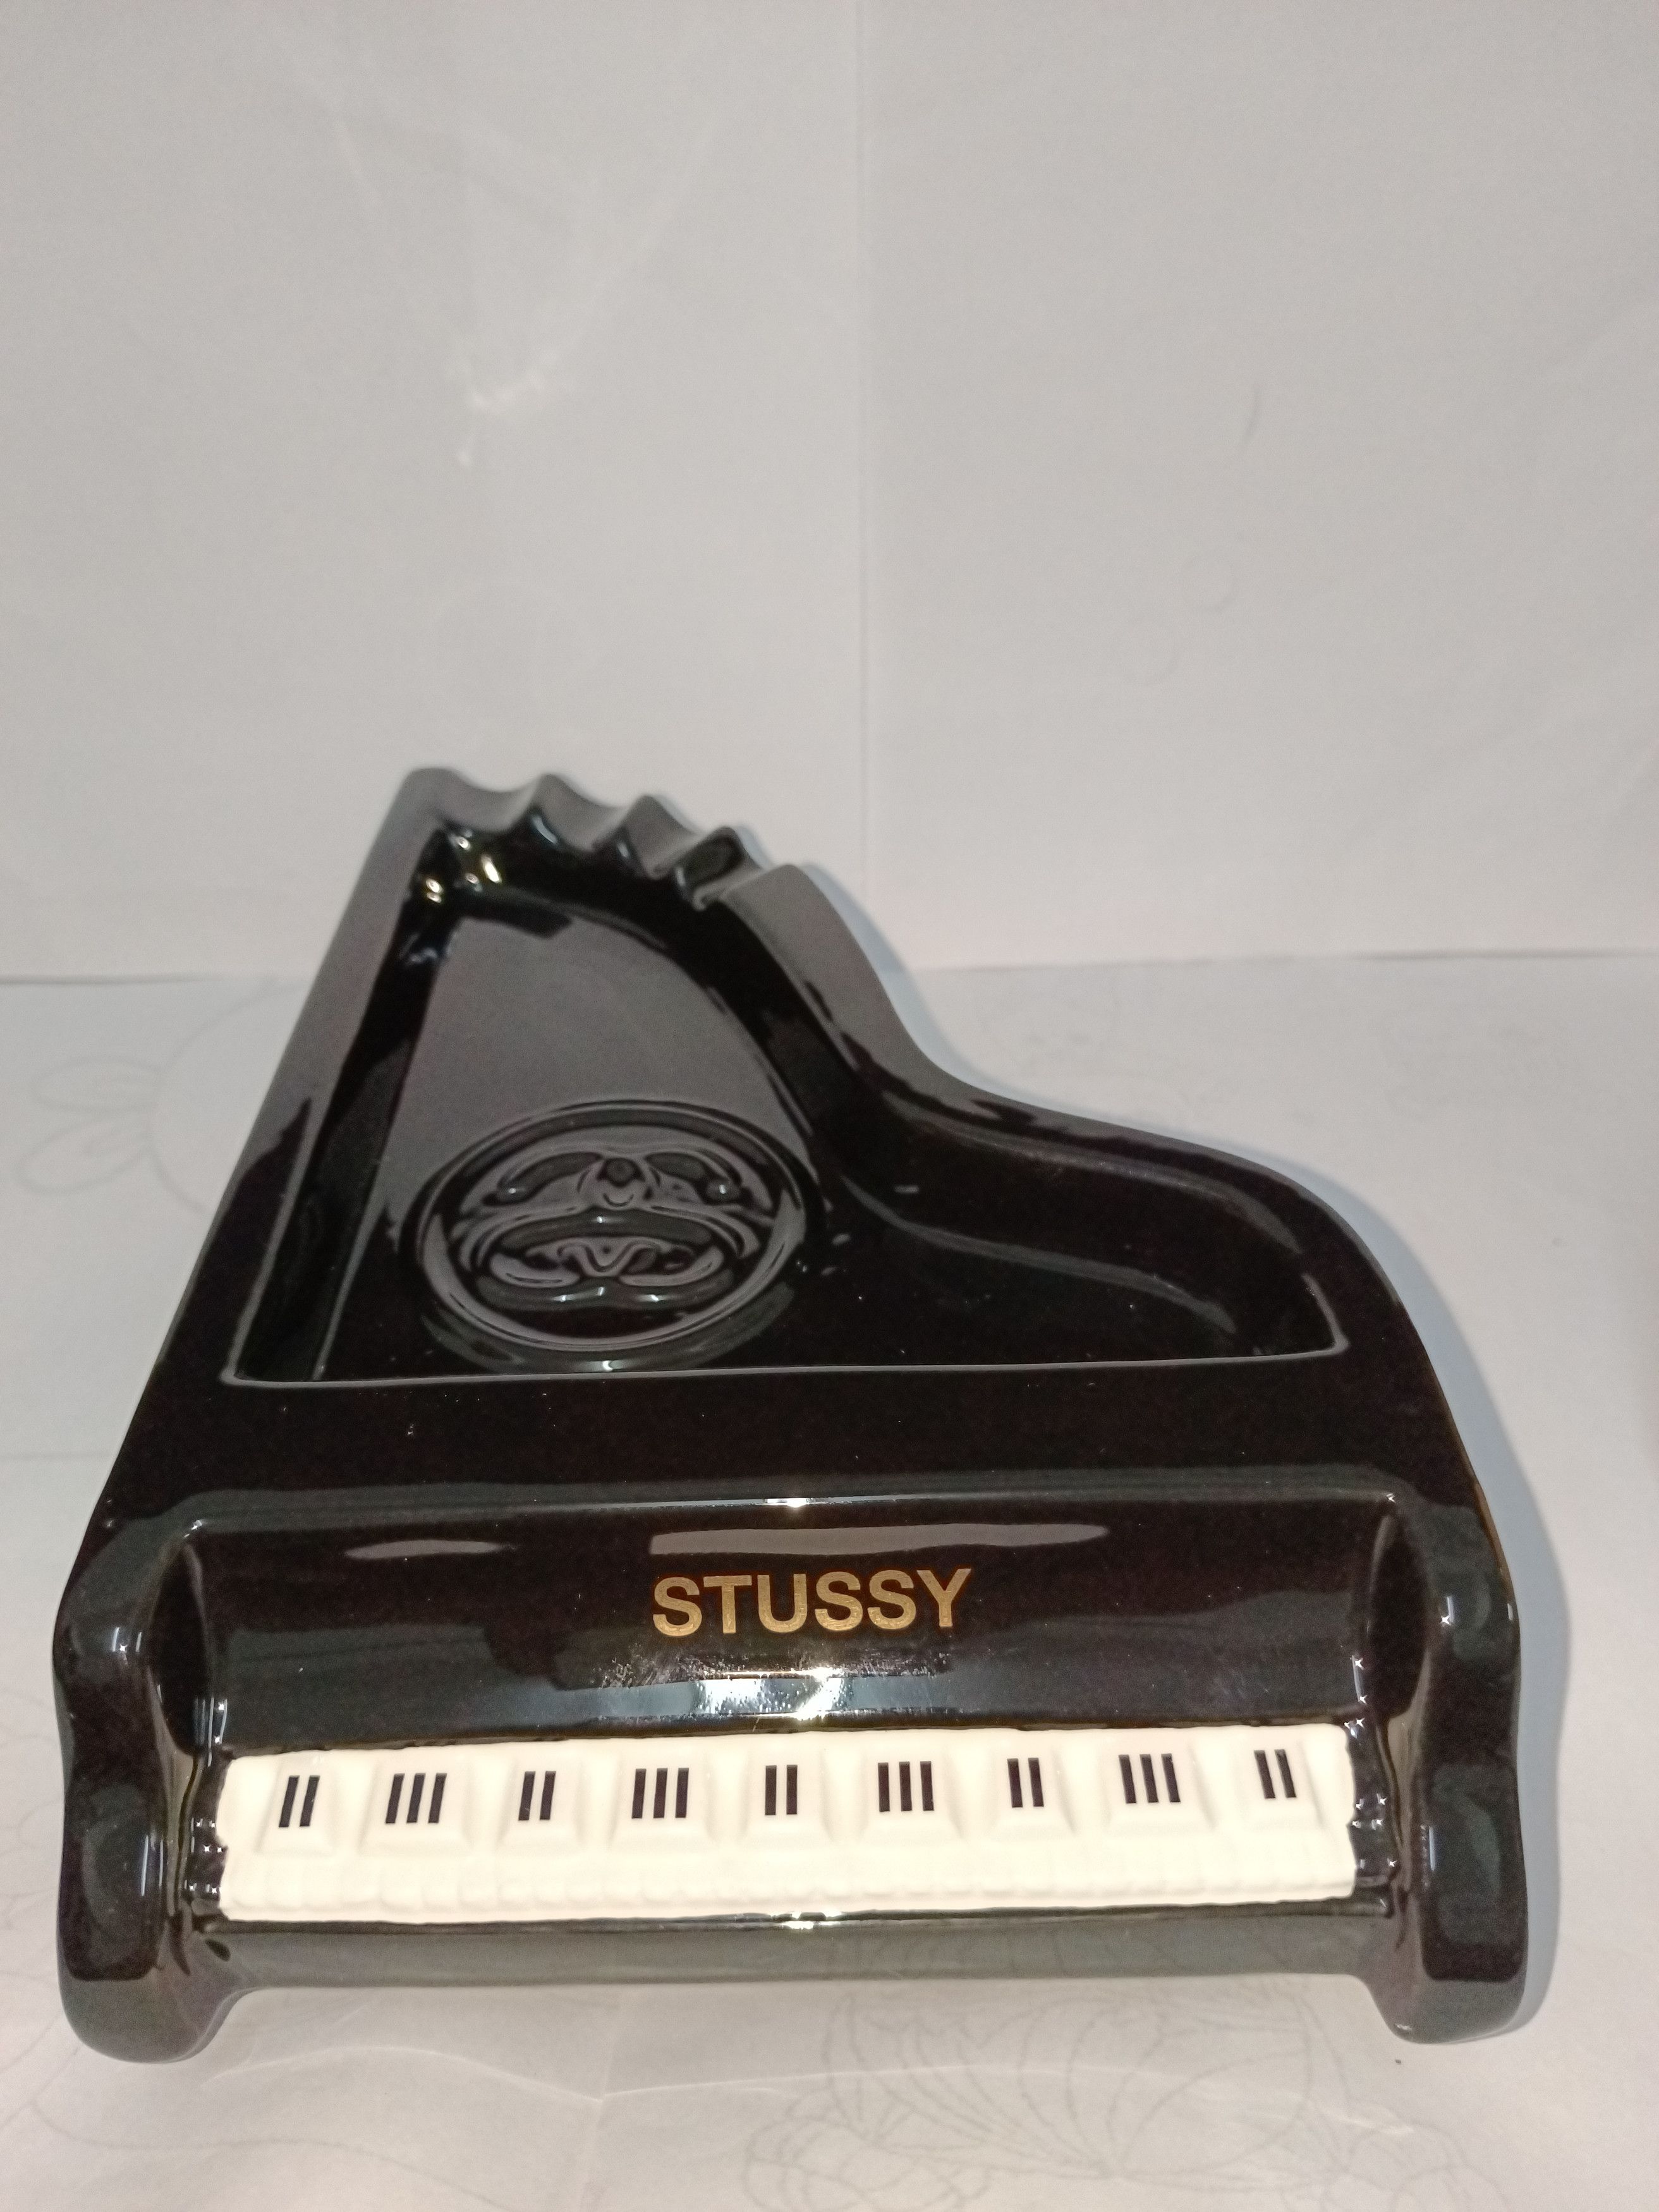 Stussy Stussy piano ashtray | Grailed